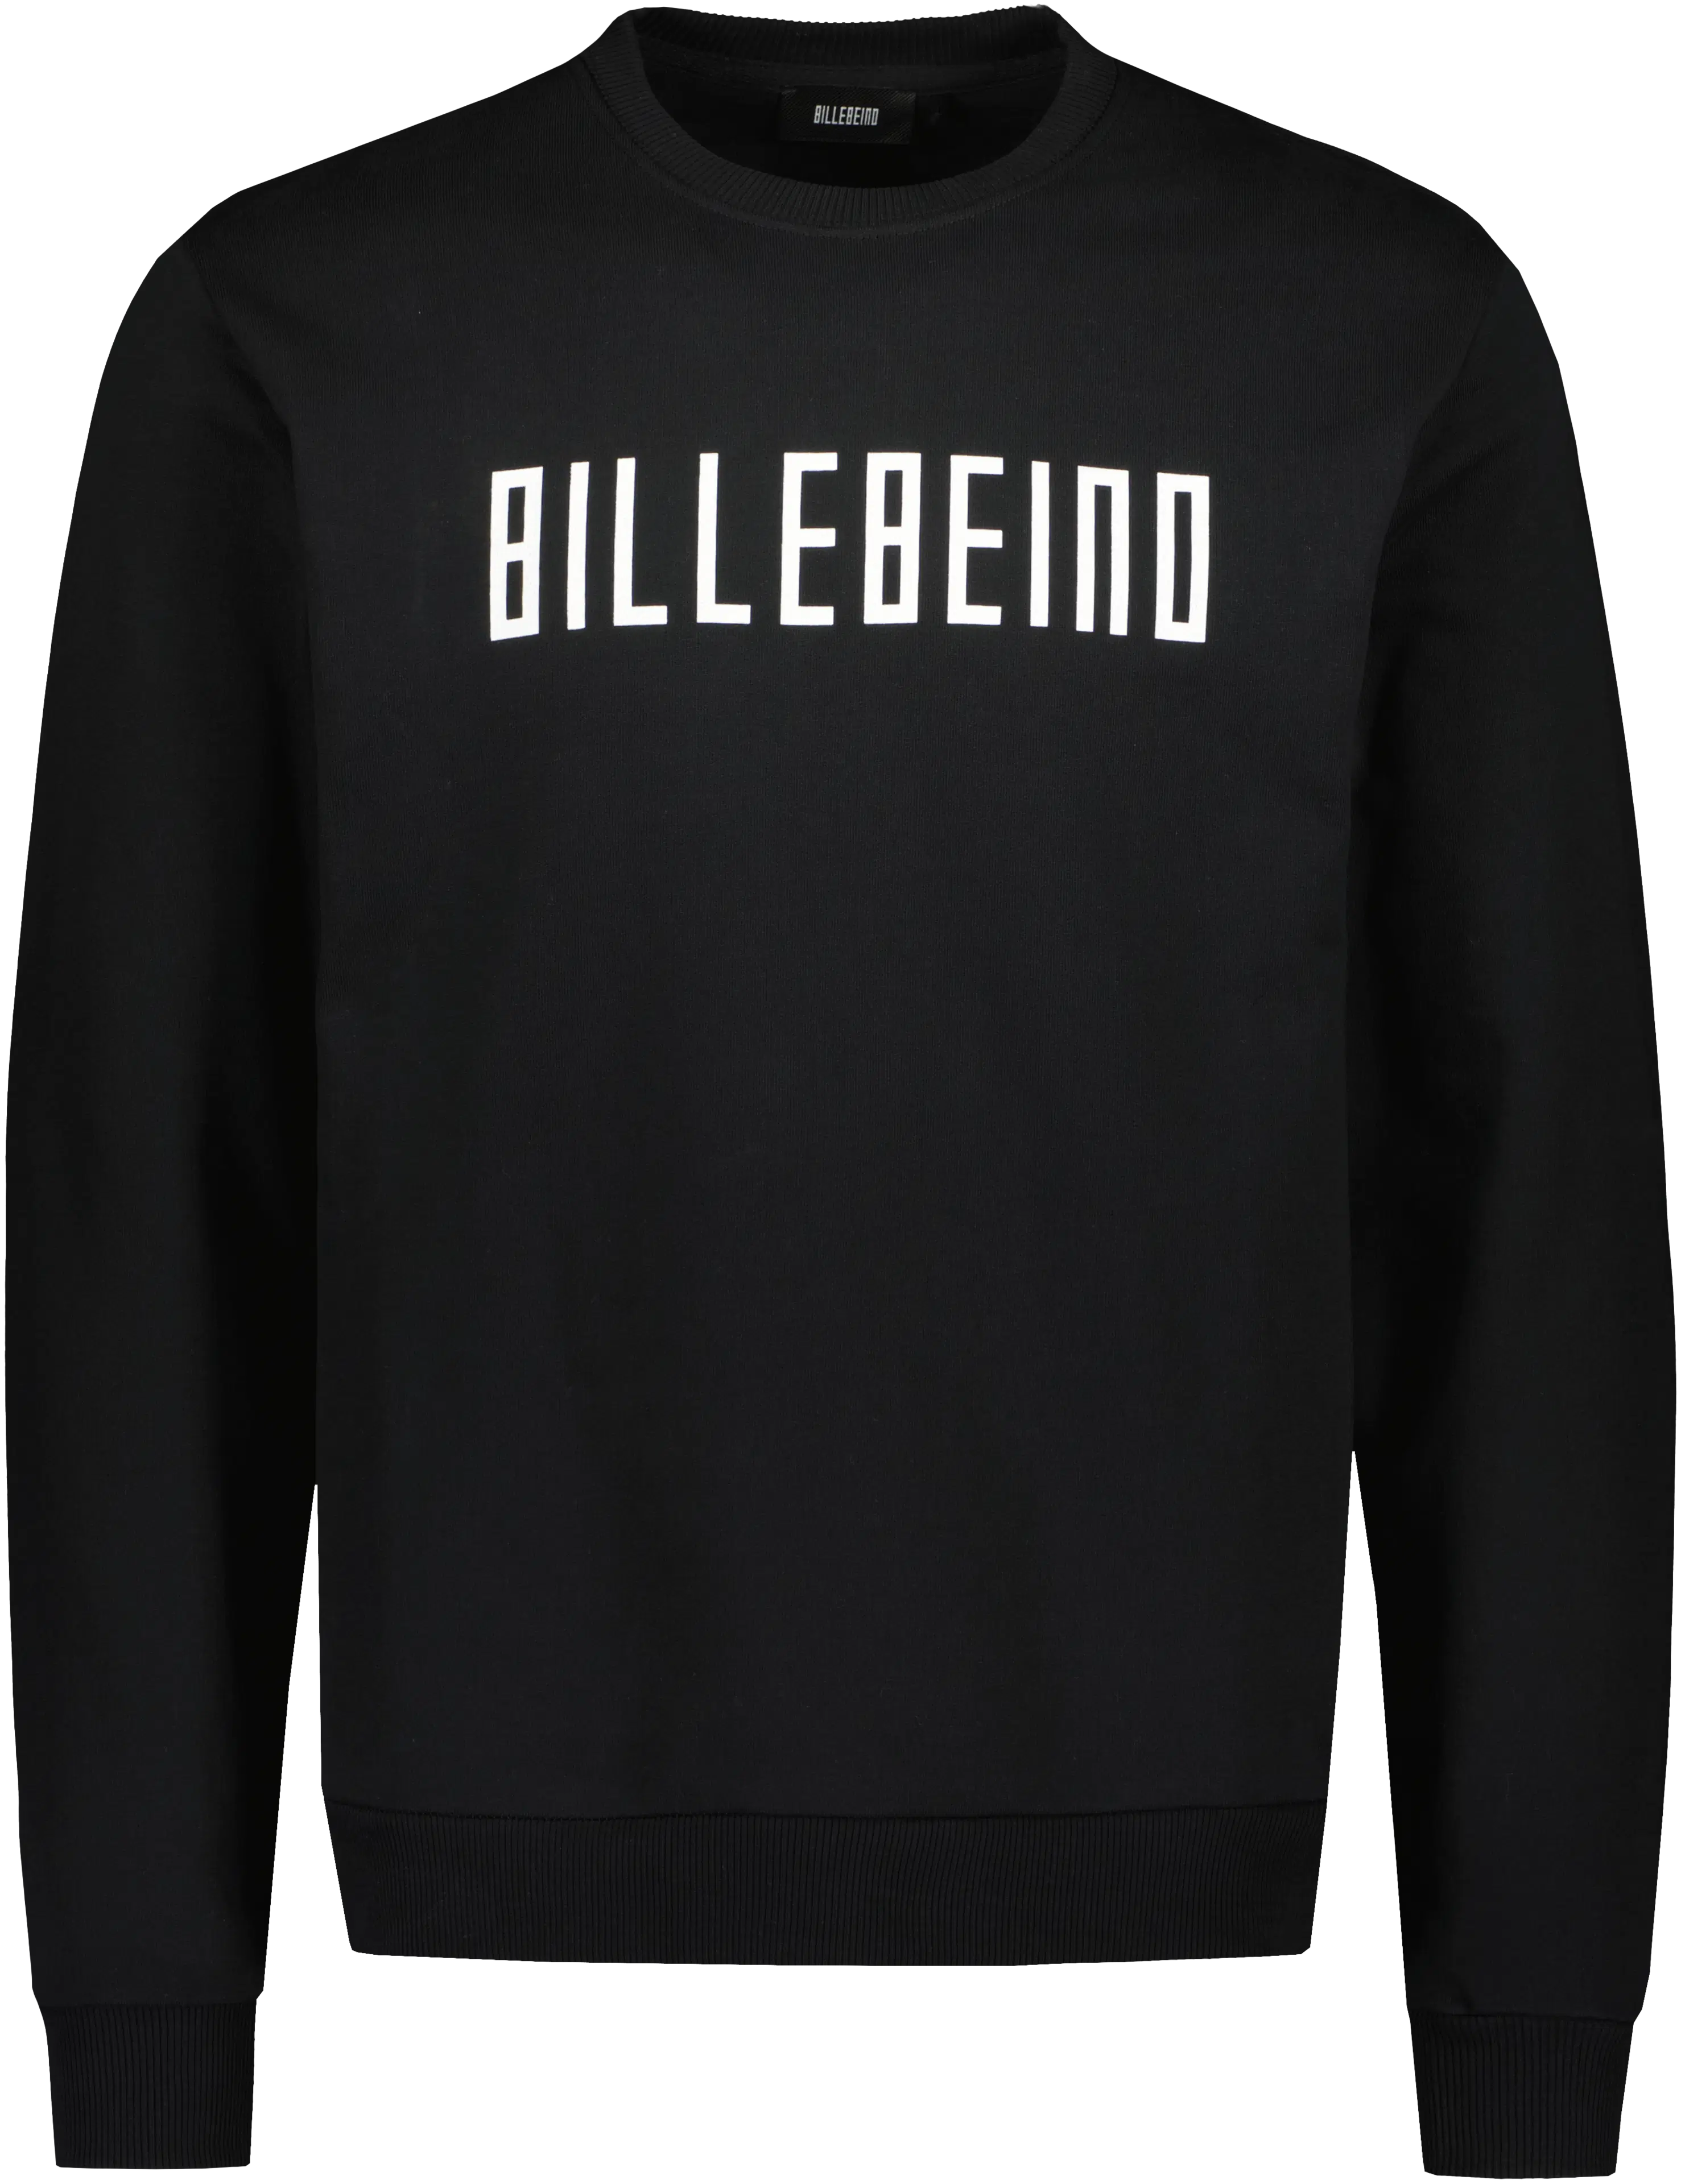 Billebeino Logo college